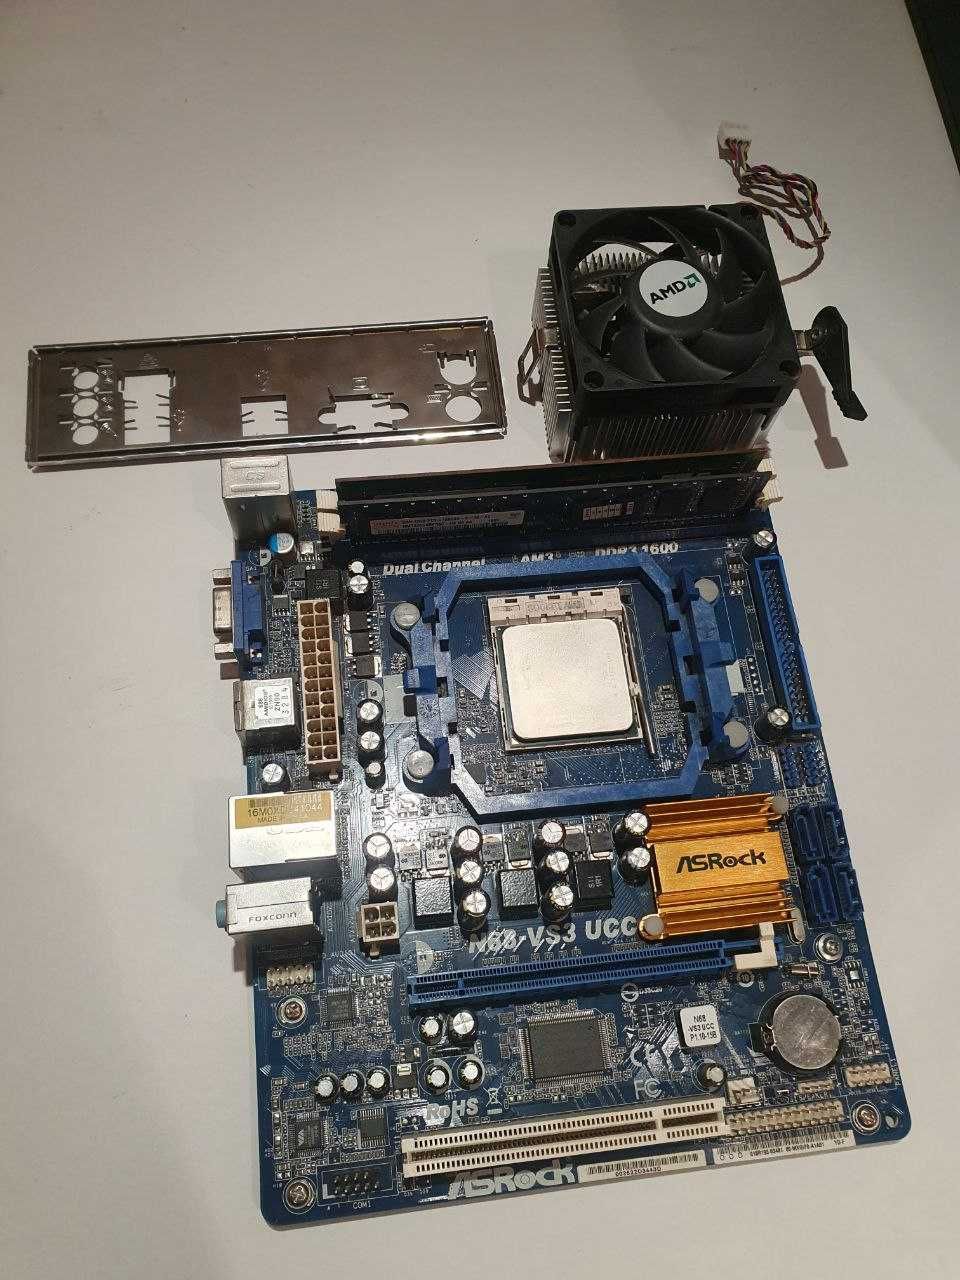 Комплект AMD Athlon II X2 270 / ASROCK N68-VS3 UCC / 4gb ОЗУ / кулер